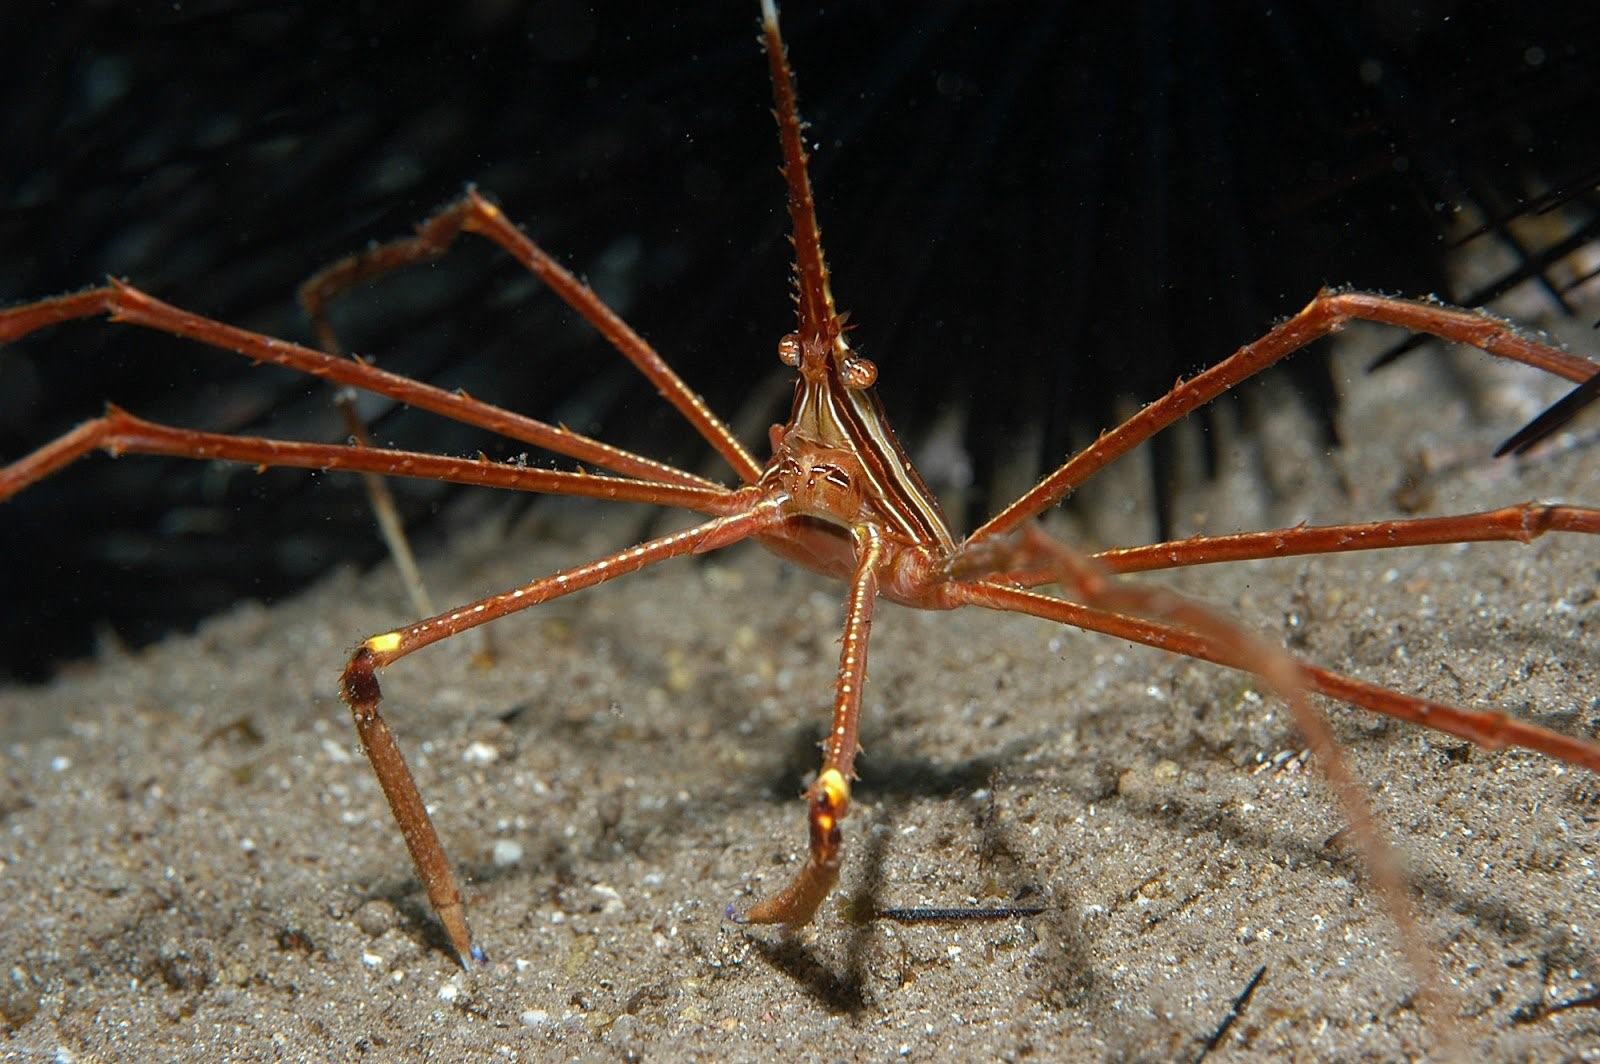 Фото морского паука